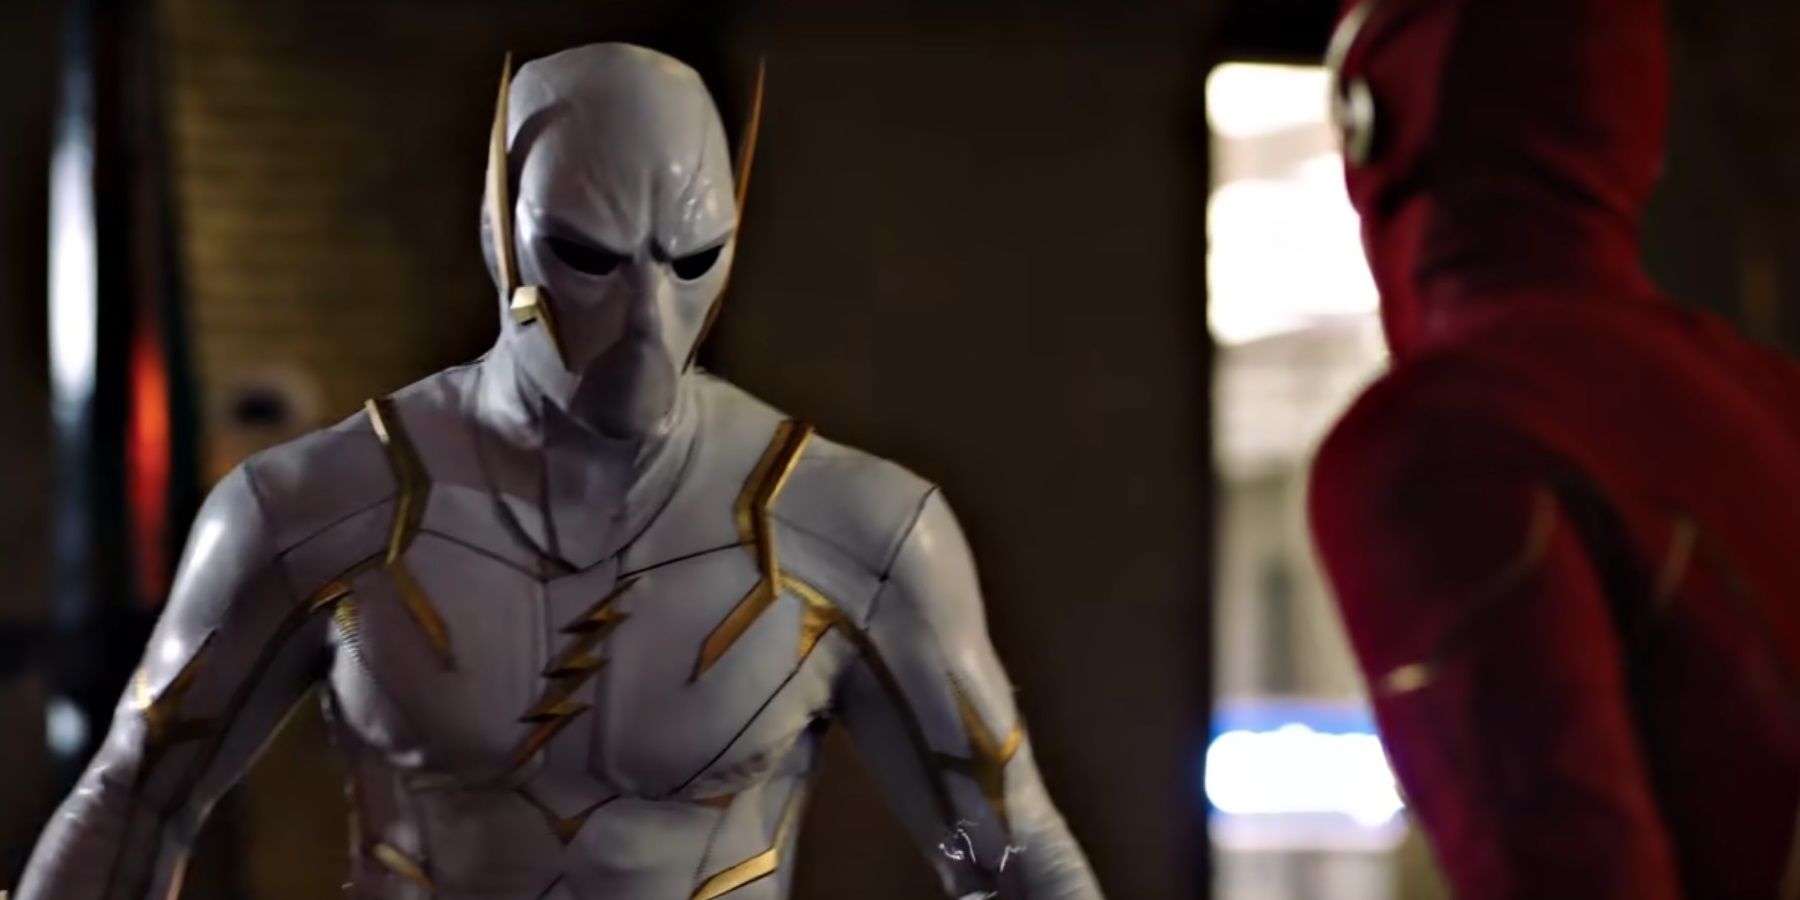 Godspeed battles the Flash in season 6